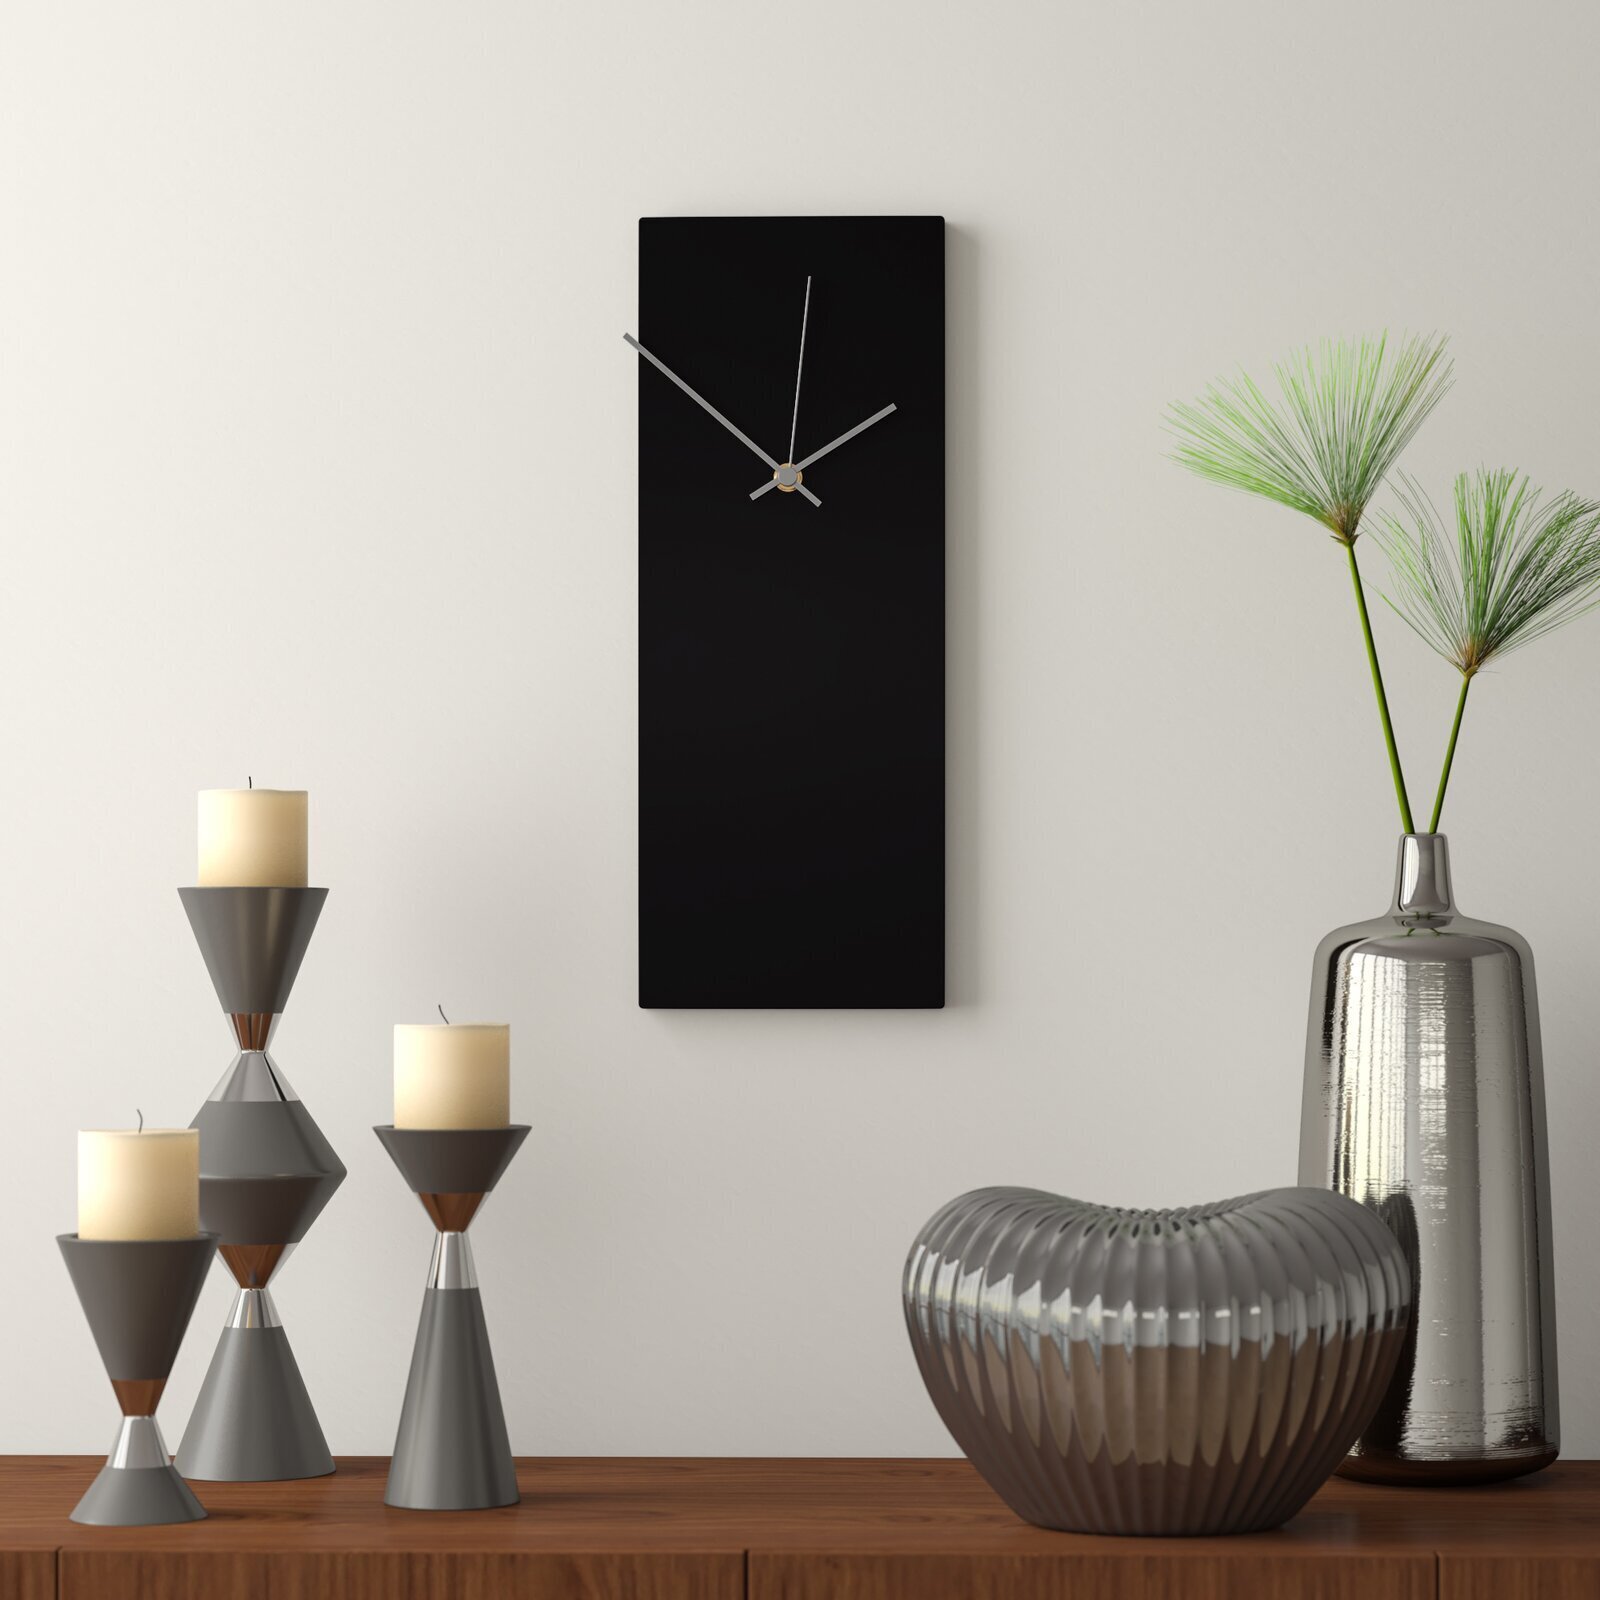 Jet Black Small Wall Clock 